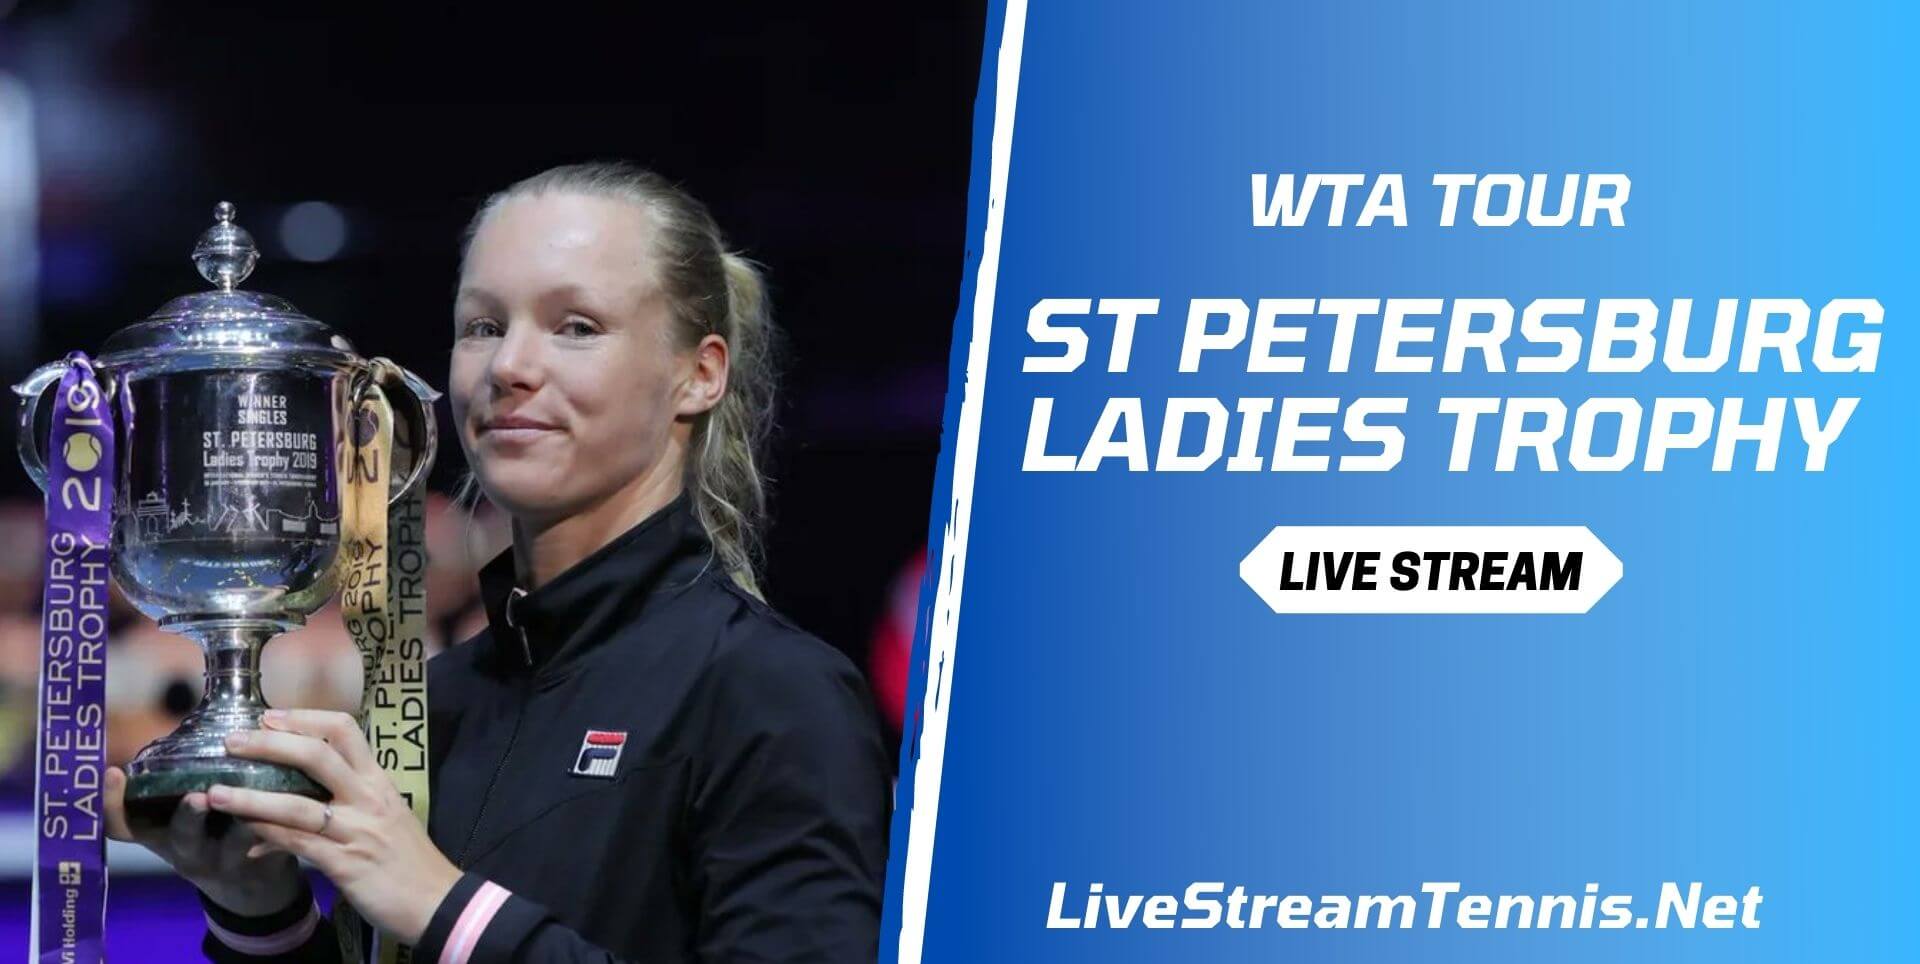 St Petersburg Ladies Trophy WTA Live Stream